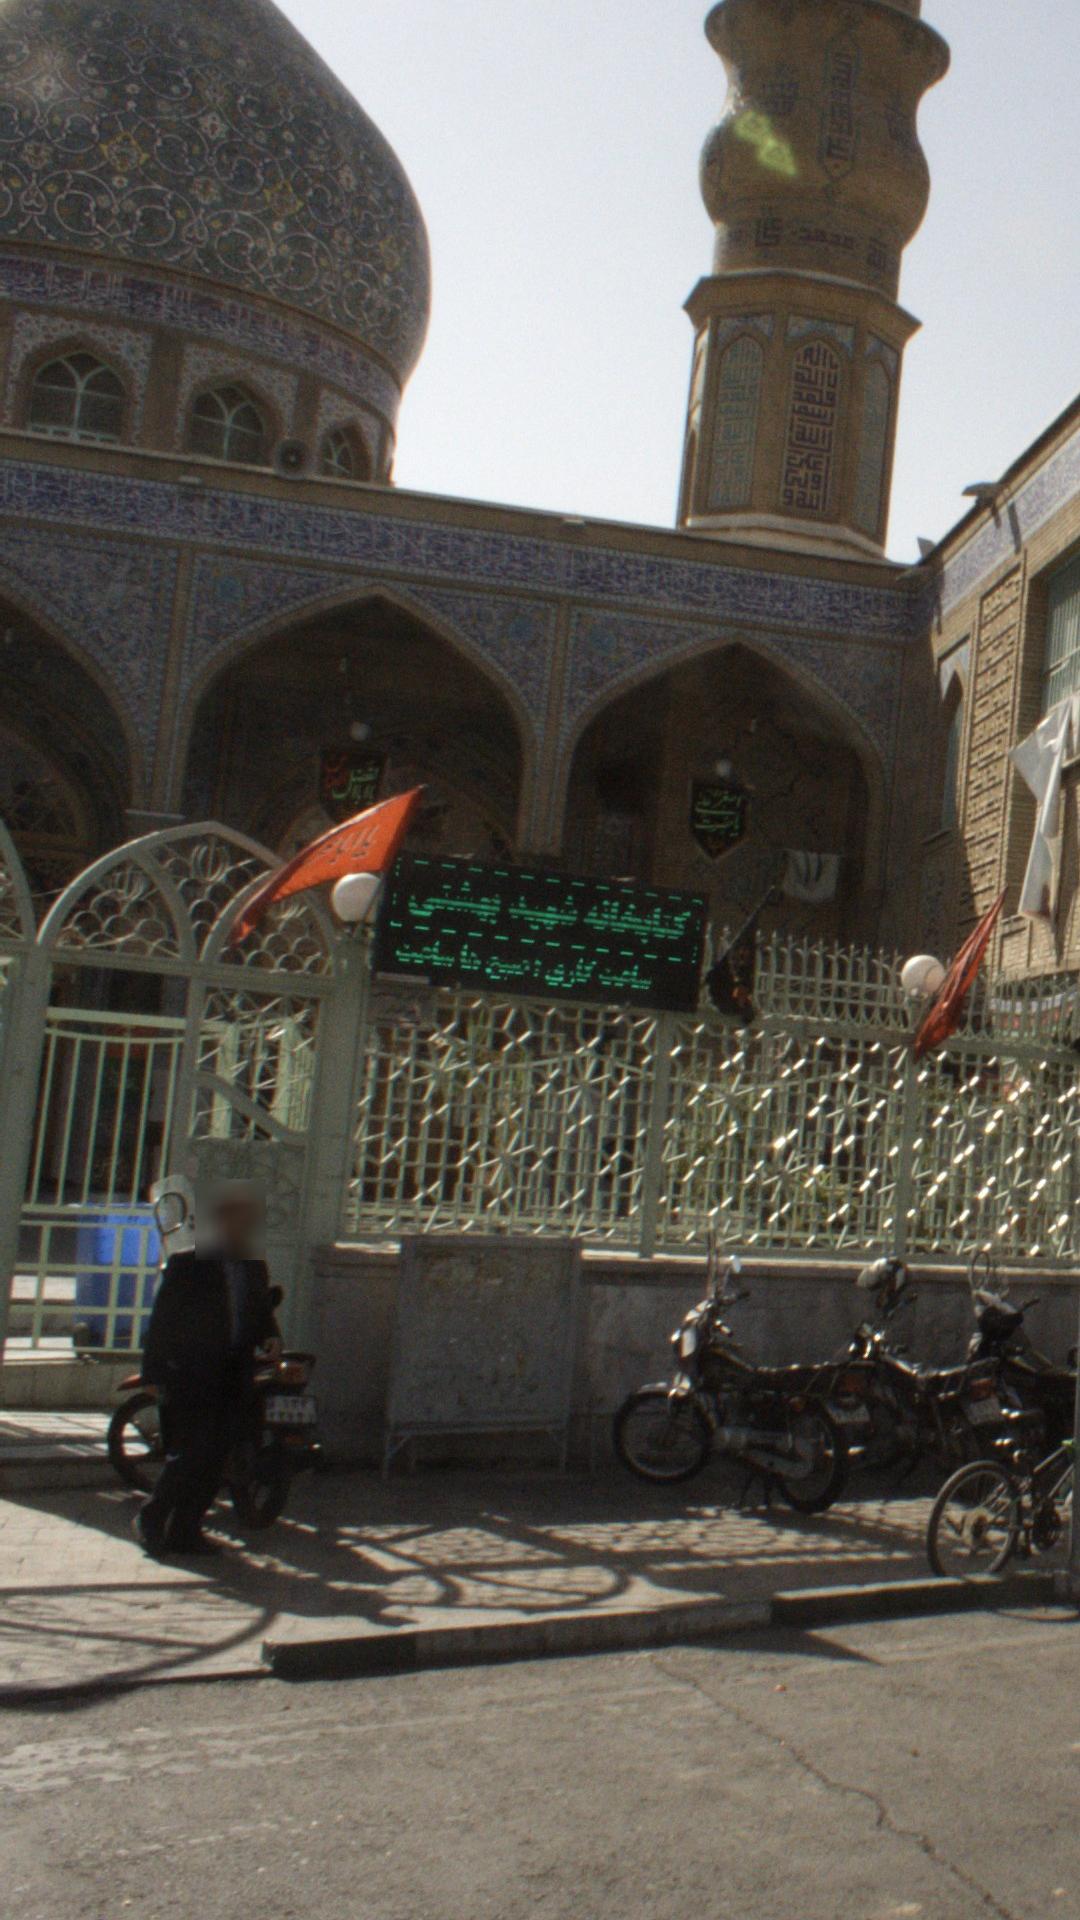 کتابخانه شهید بهشتی